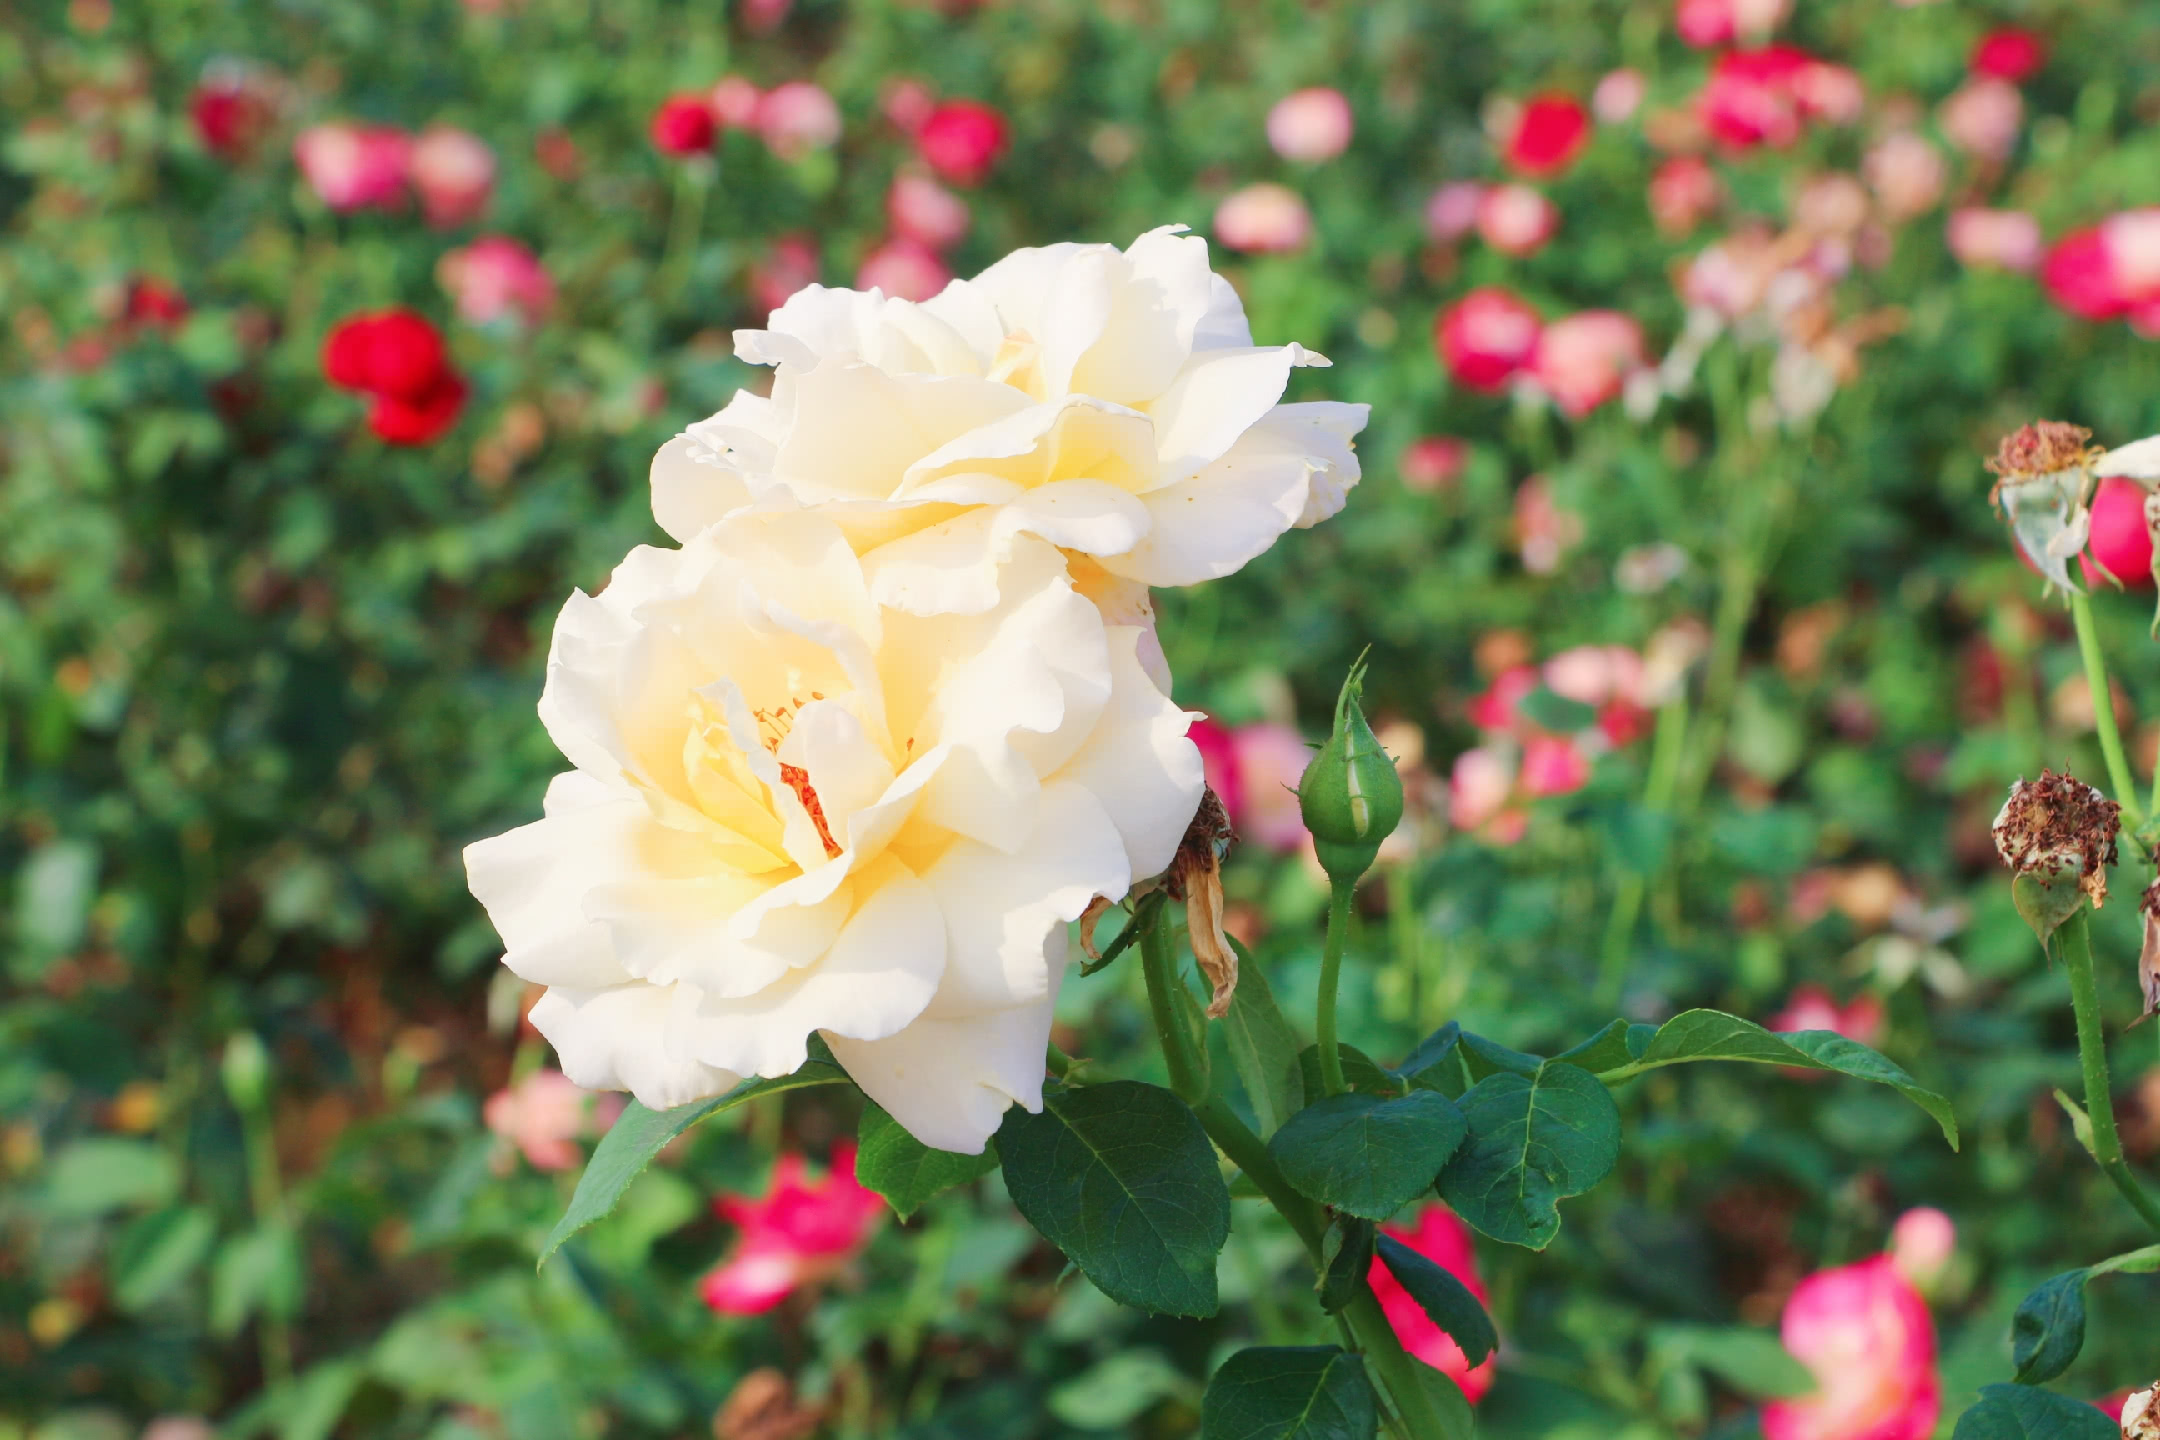 喜欢玫瑰花的一定不要错过,常州玫瑰风情园绽放千亩玫瑰花